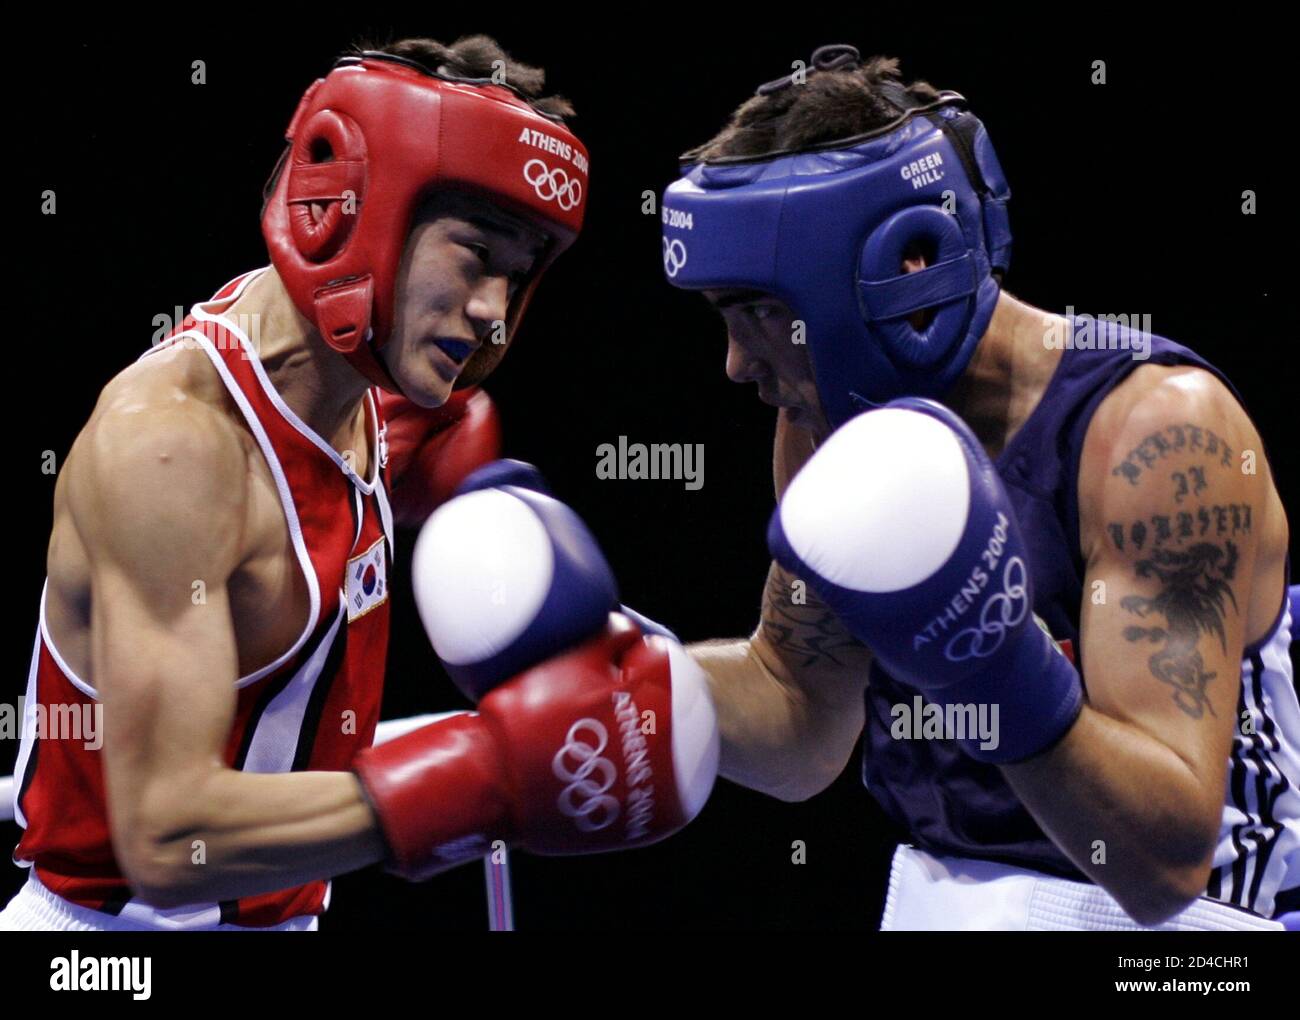 Der südkoreanische Seok Hwan Jo (L) kämpft bei den Olympischen Sommerspielen 2004 in Athen am 20. August 2004 gegen den kanadischen Benoit Gaudet (R) in ihrem federleichten (57 kg) Boxkampf um 16. Seok Hwan gewann den Kampf. Stockfoto